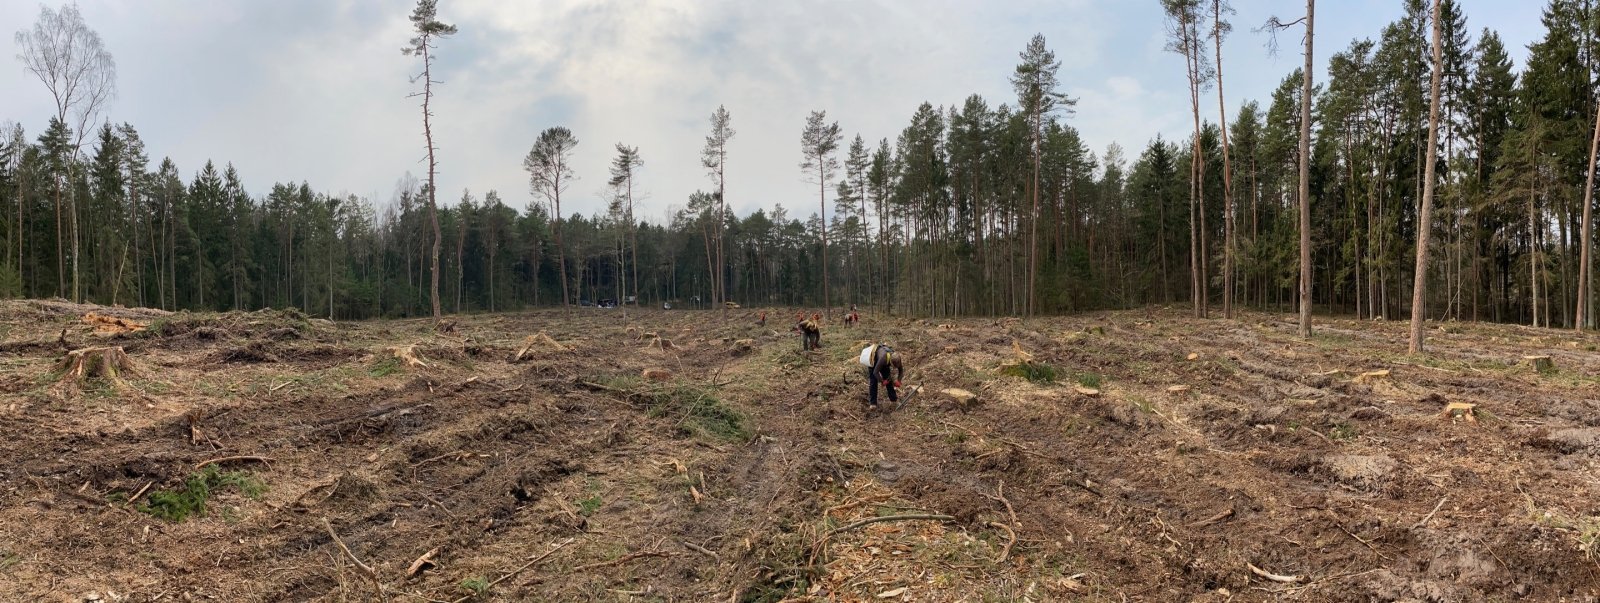 Skogarbeidere er inkludert i listen over manglende yrker.  Hva er mulighetene for å tjene mens du jobber i skogen?